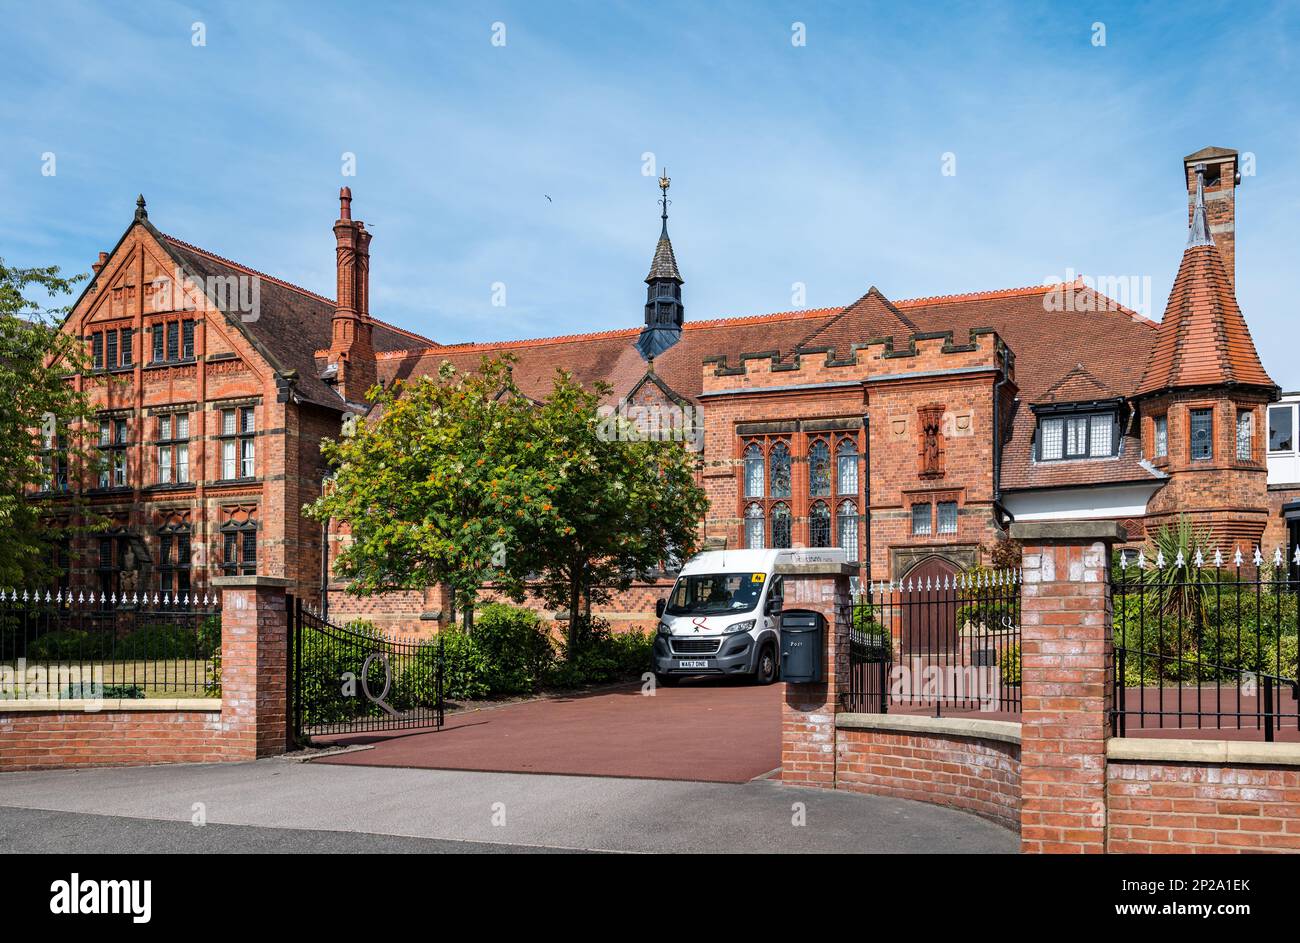 Bâtiment en brique rouge orné, The Queen's School, Chester, Angleterre, Royaume-Uni Banque D'Images